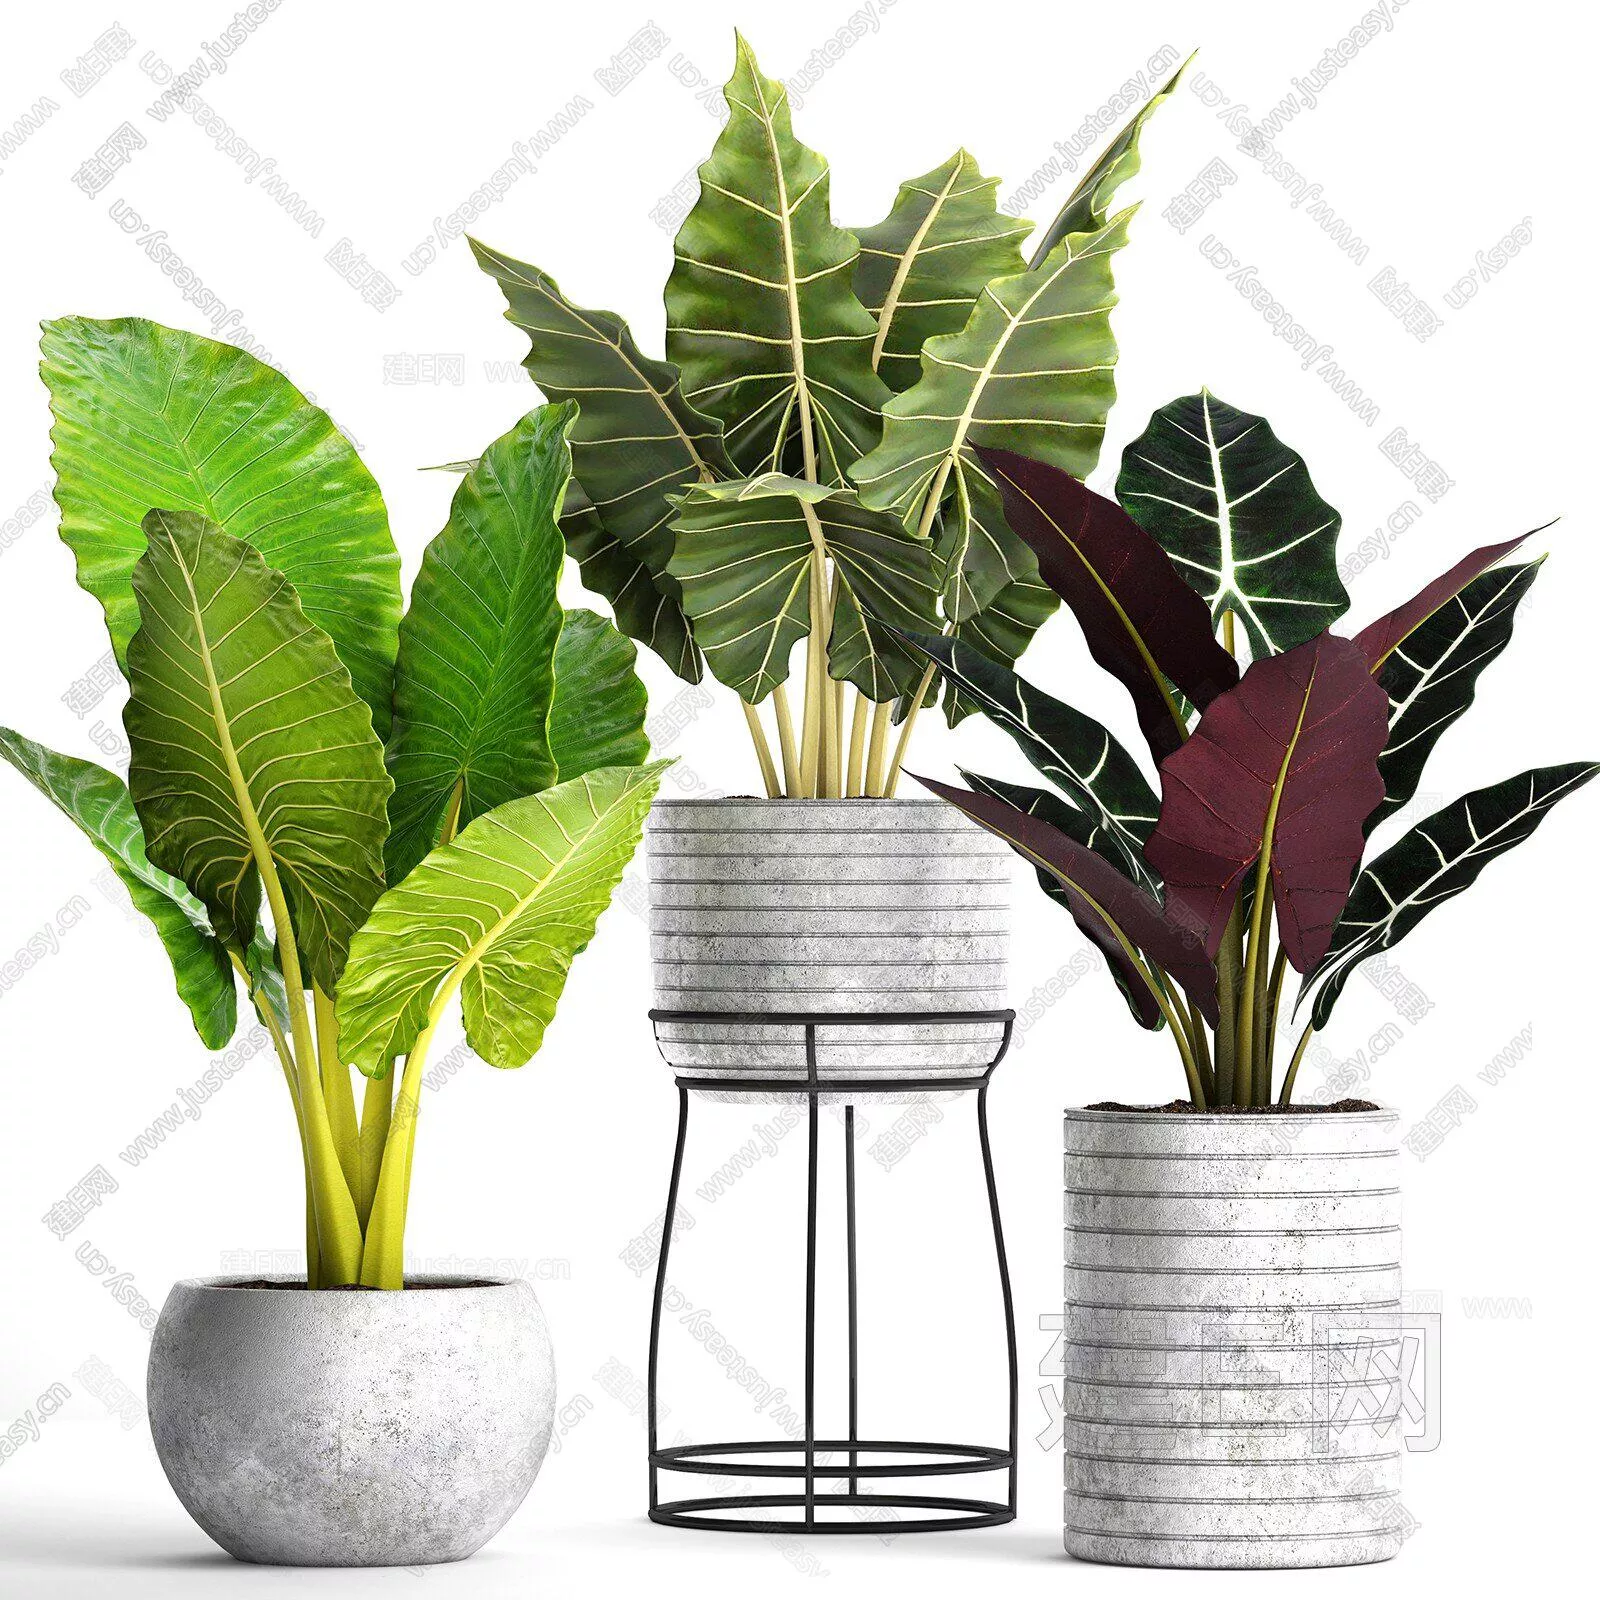 MODERN POTTED PLANT - SKETCHUP 3D MODEL - ENSCAPE - 111627740